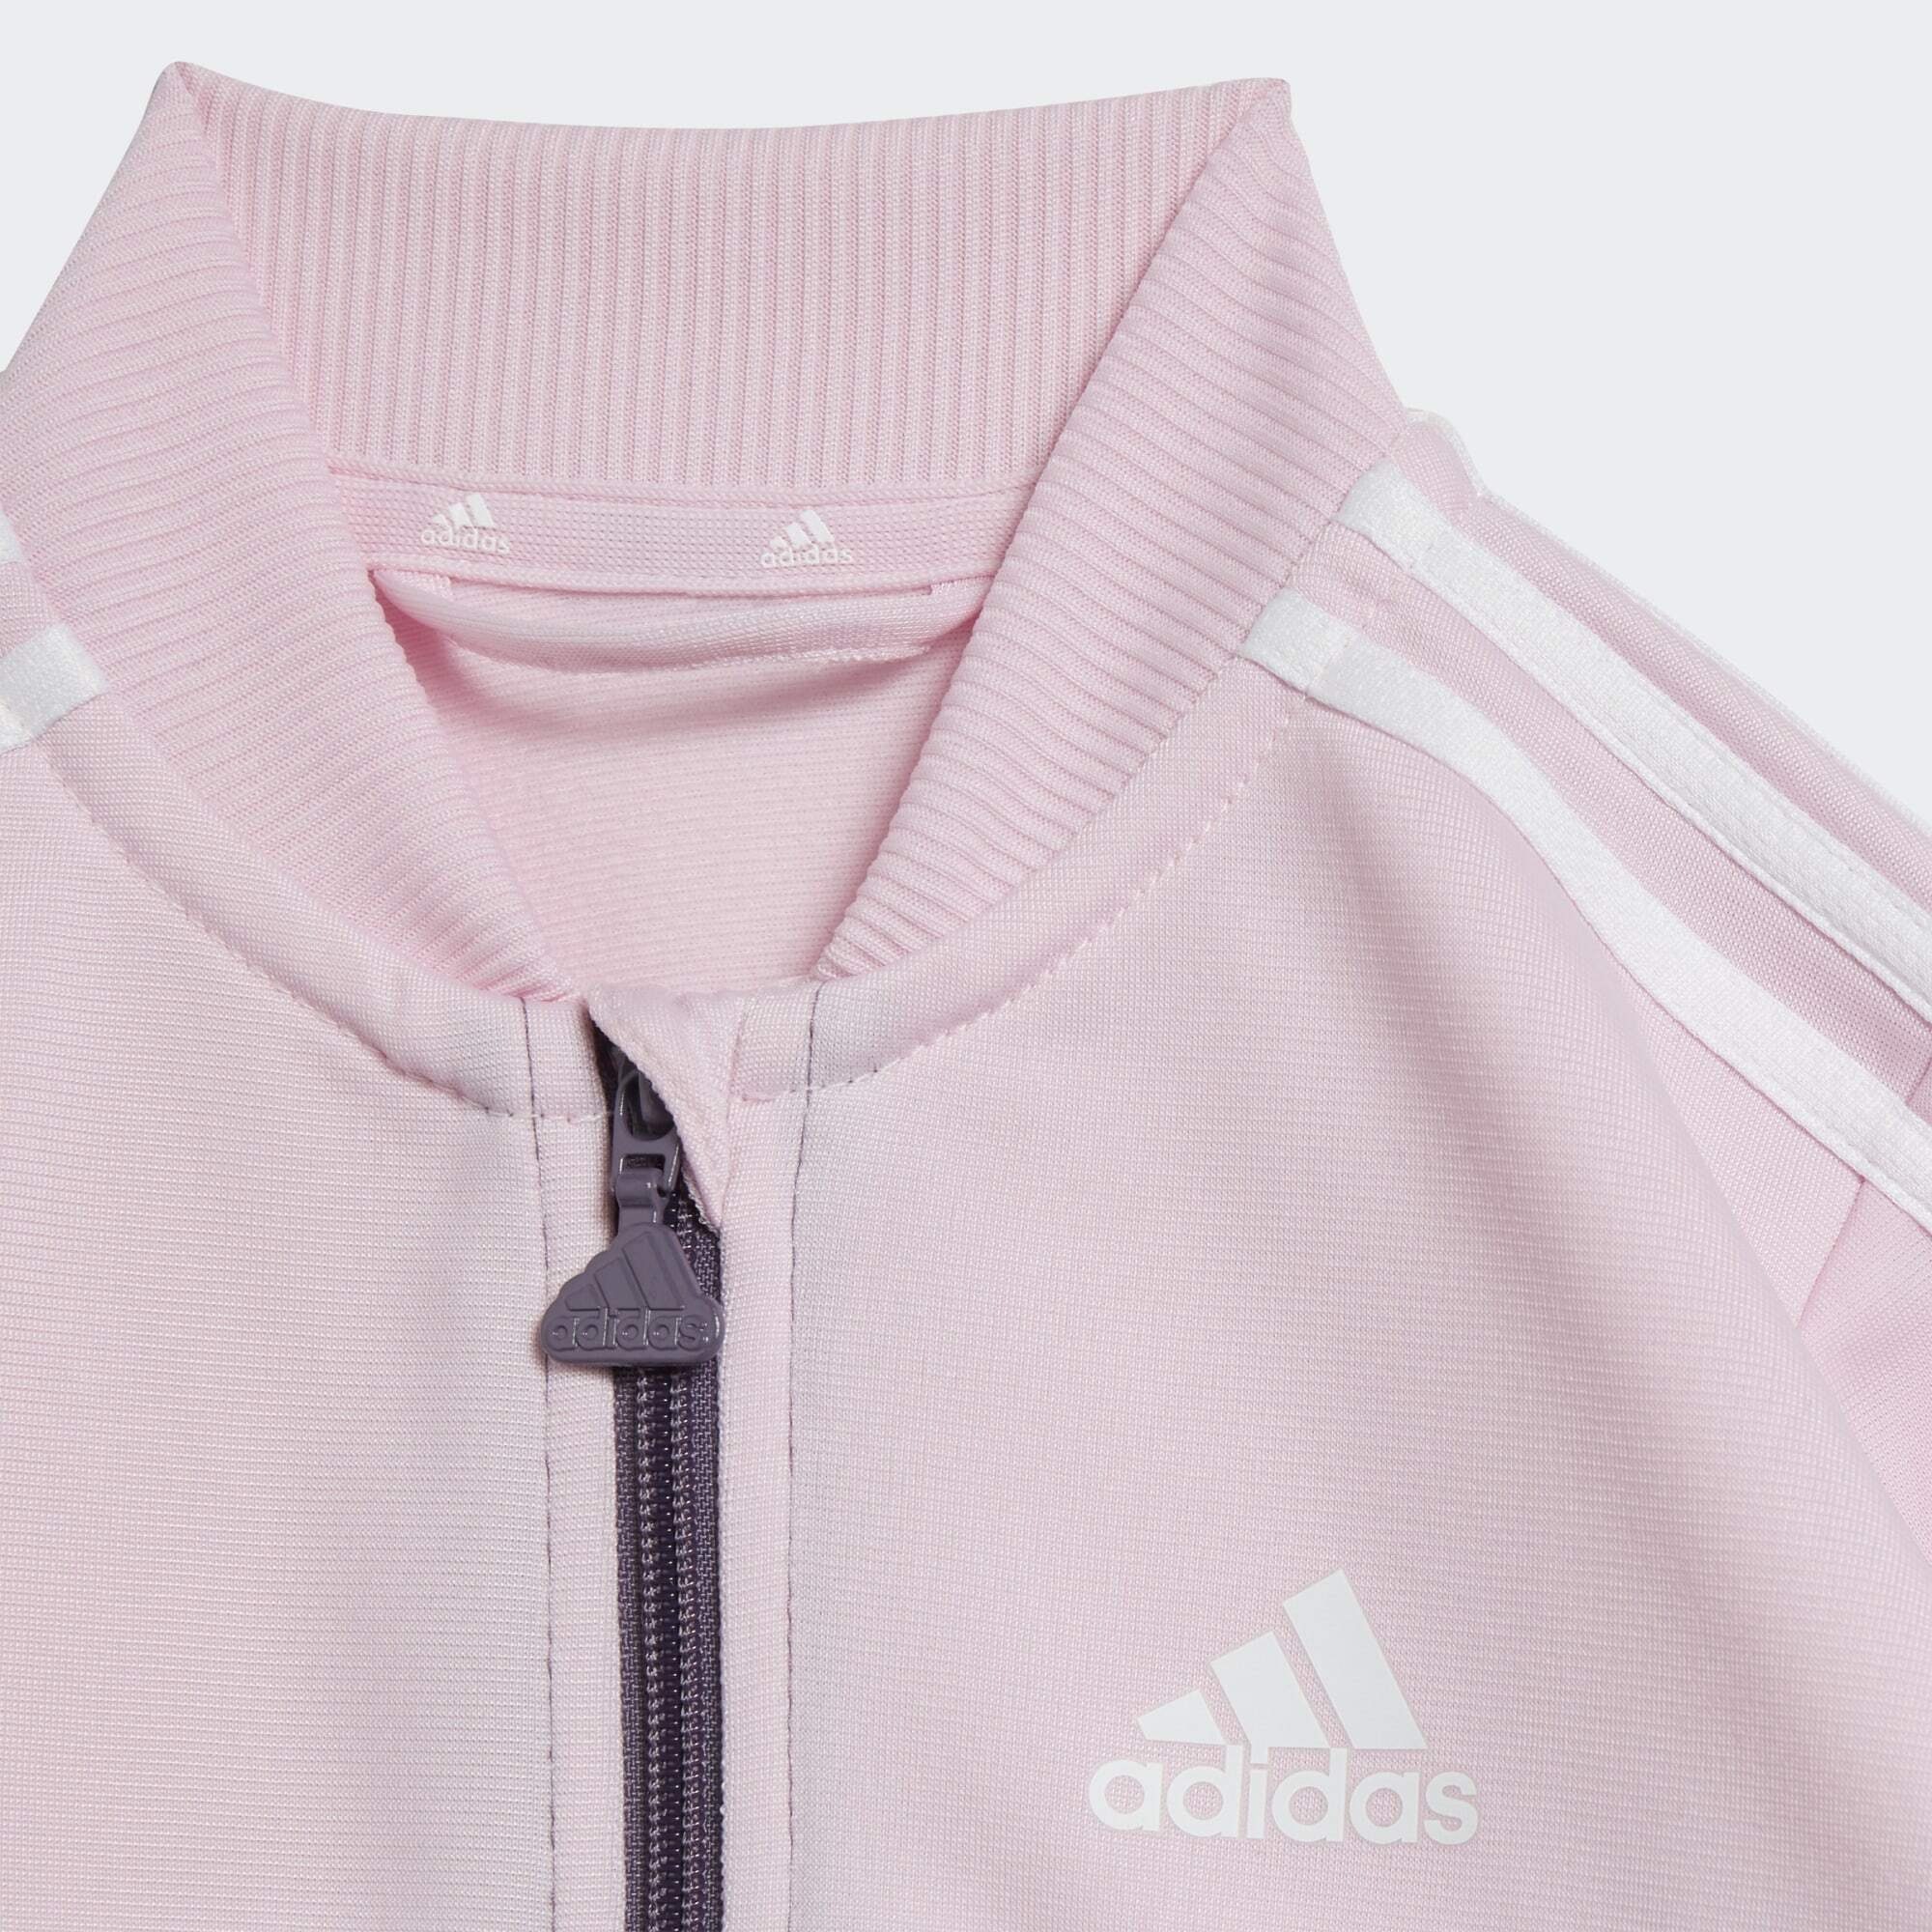 / Sportswear Clear Shadow / adidas Trainingsanzug White Violet Pink